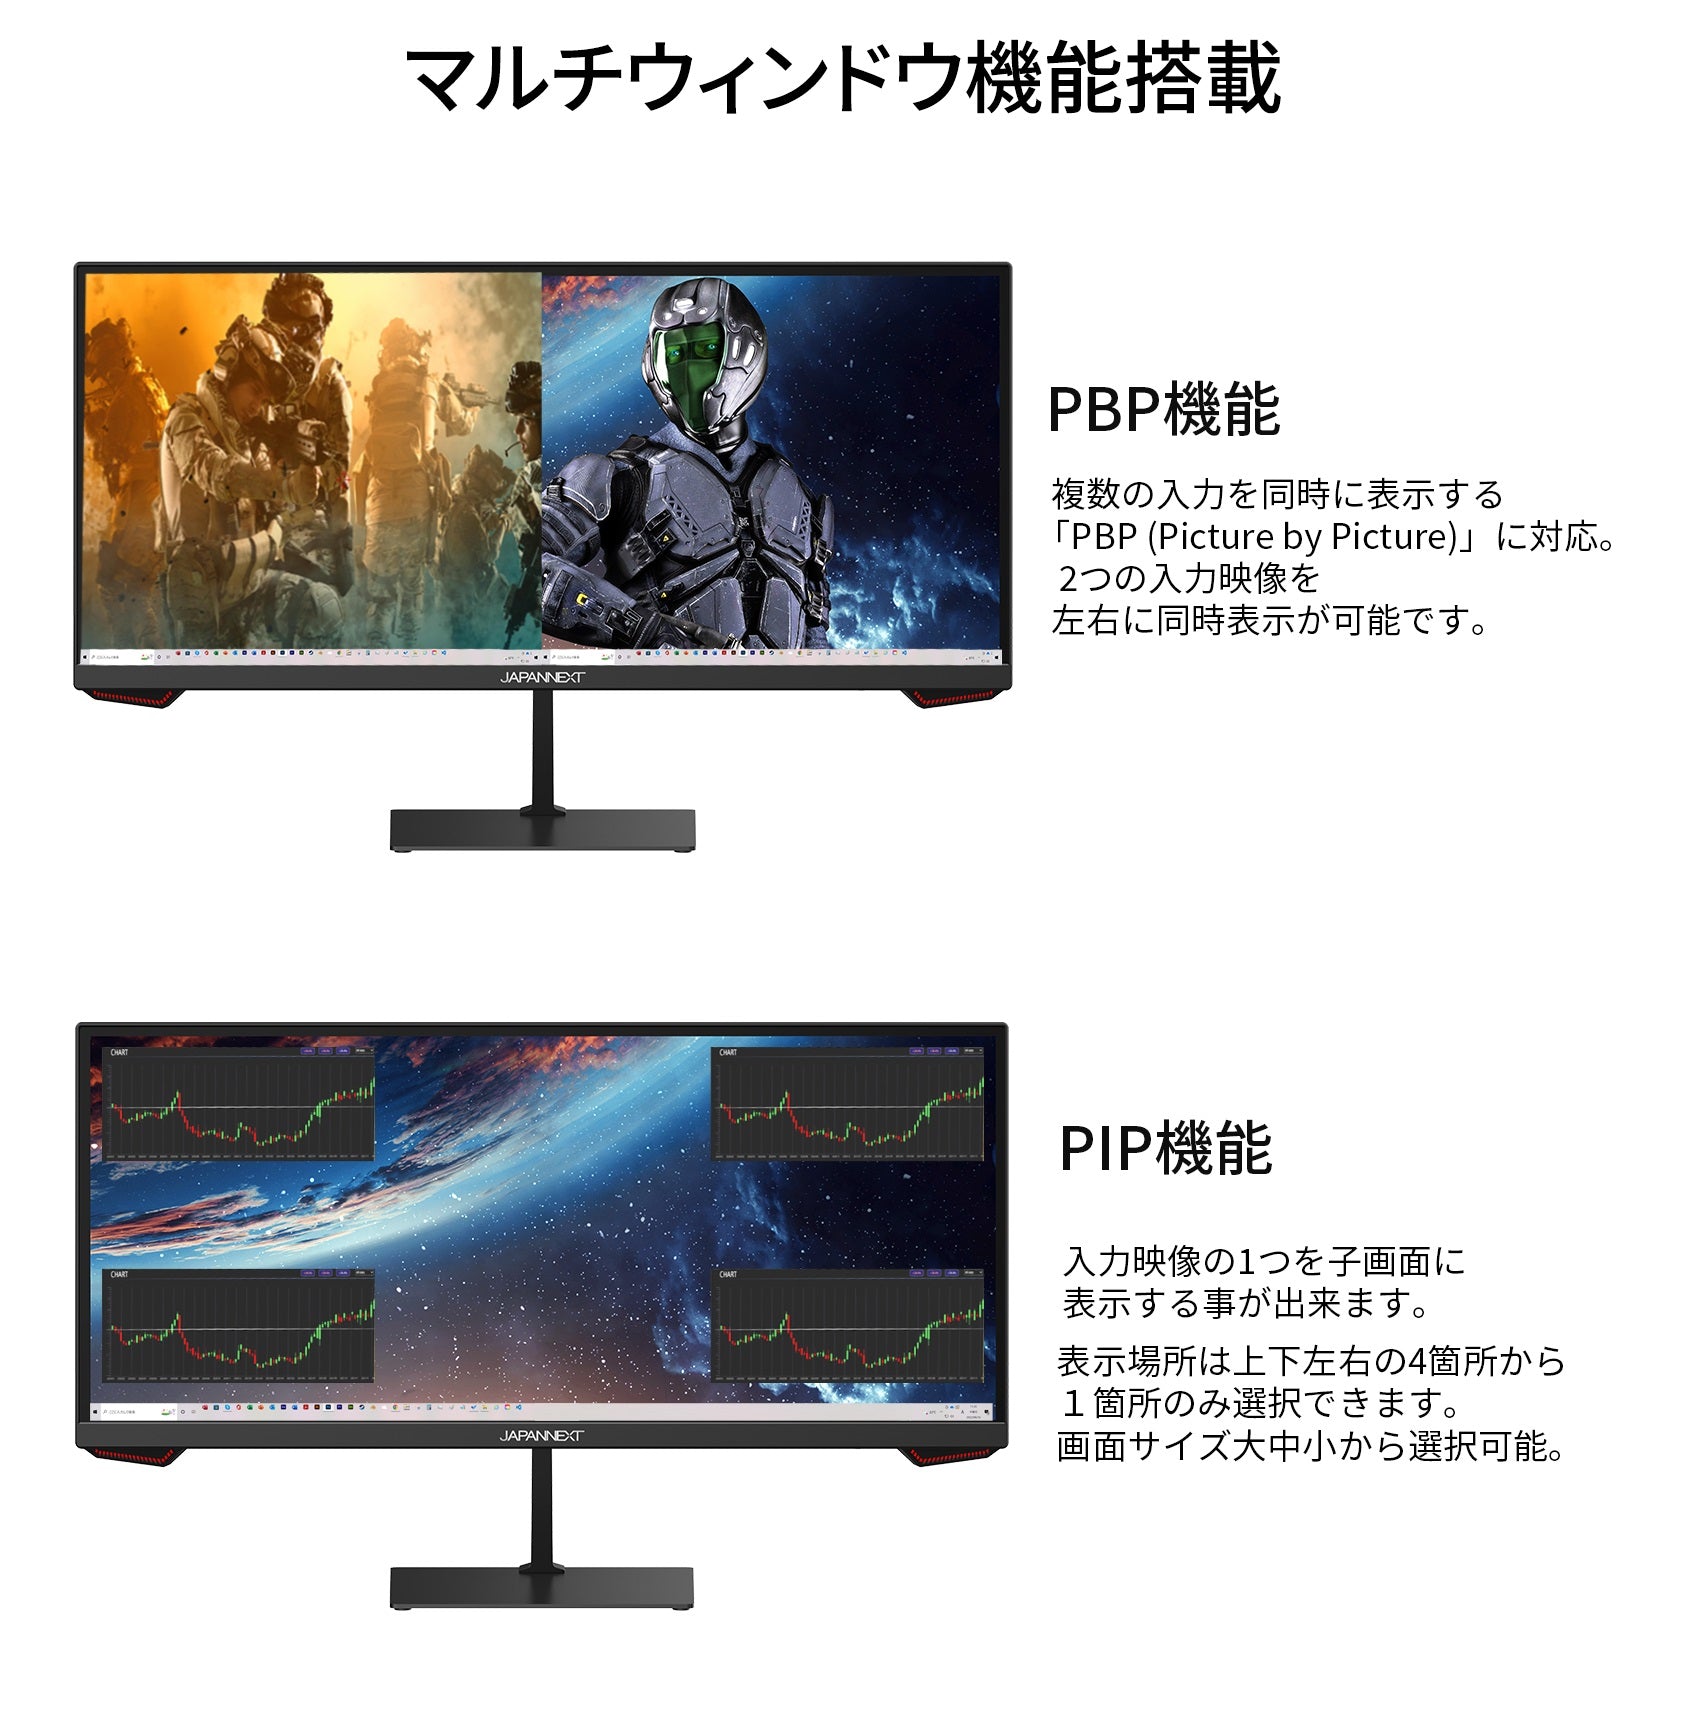 JAPAN NEXT ゲーミングモニター 200hx